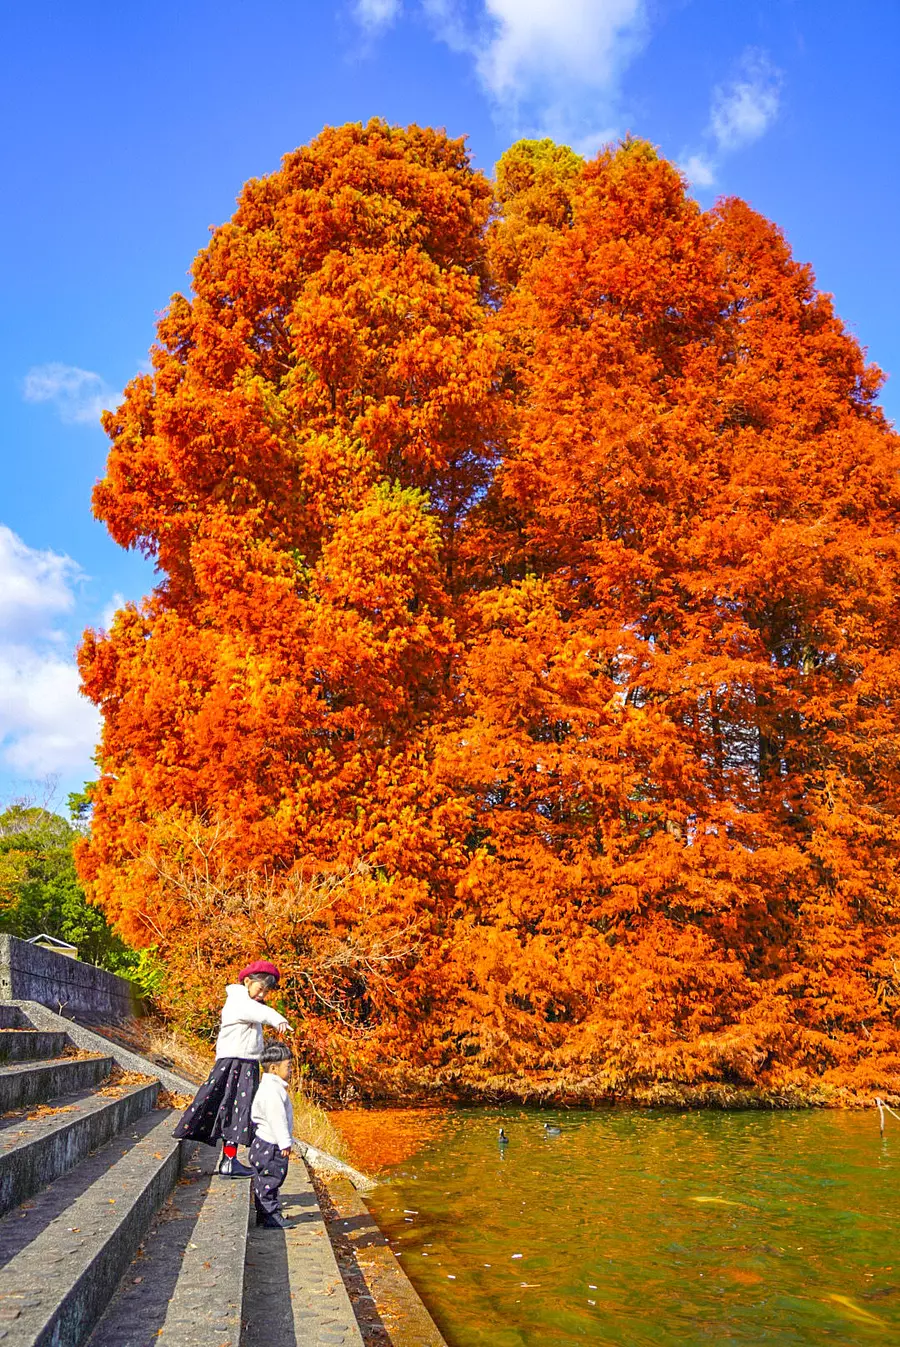 grand arbre avec des feuilles d'automne